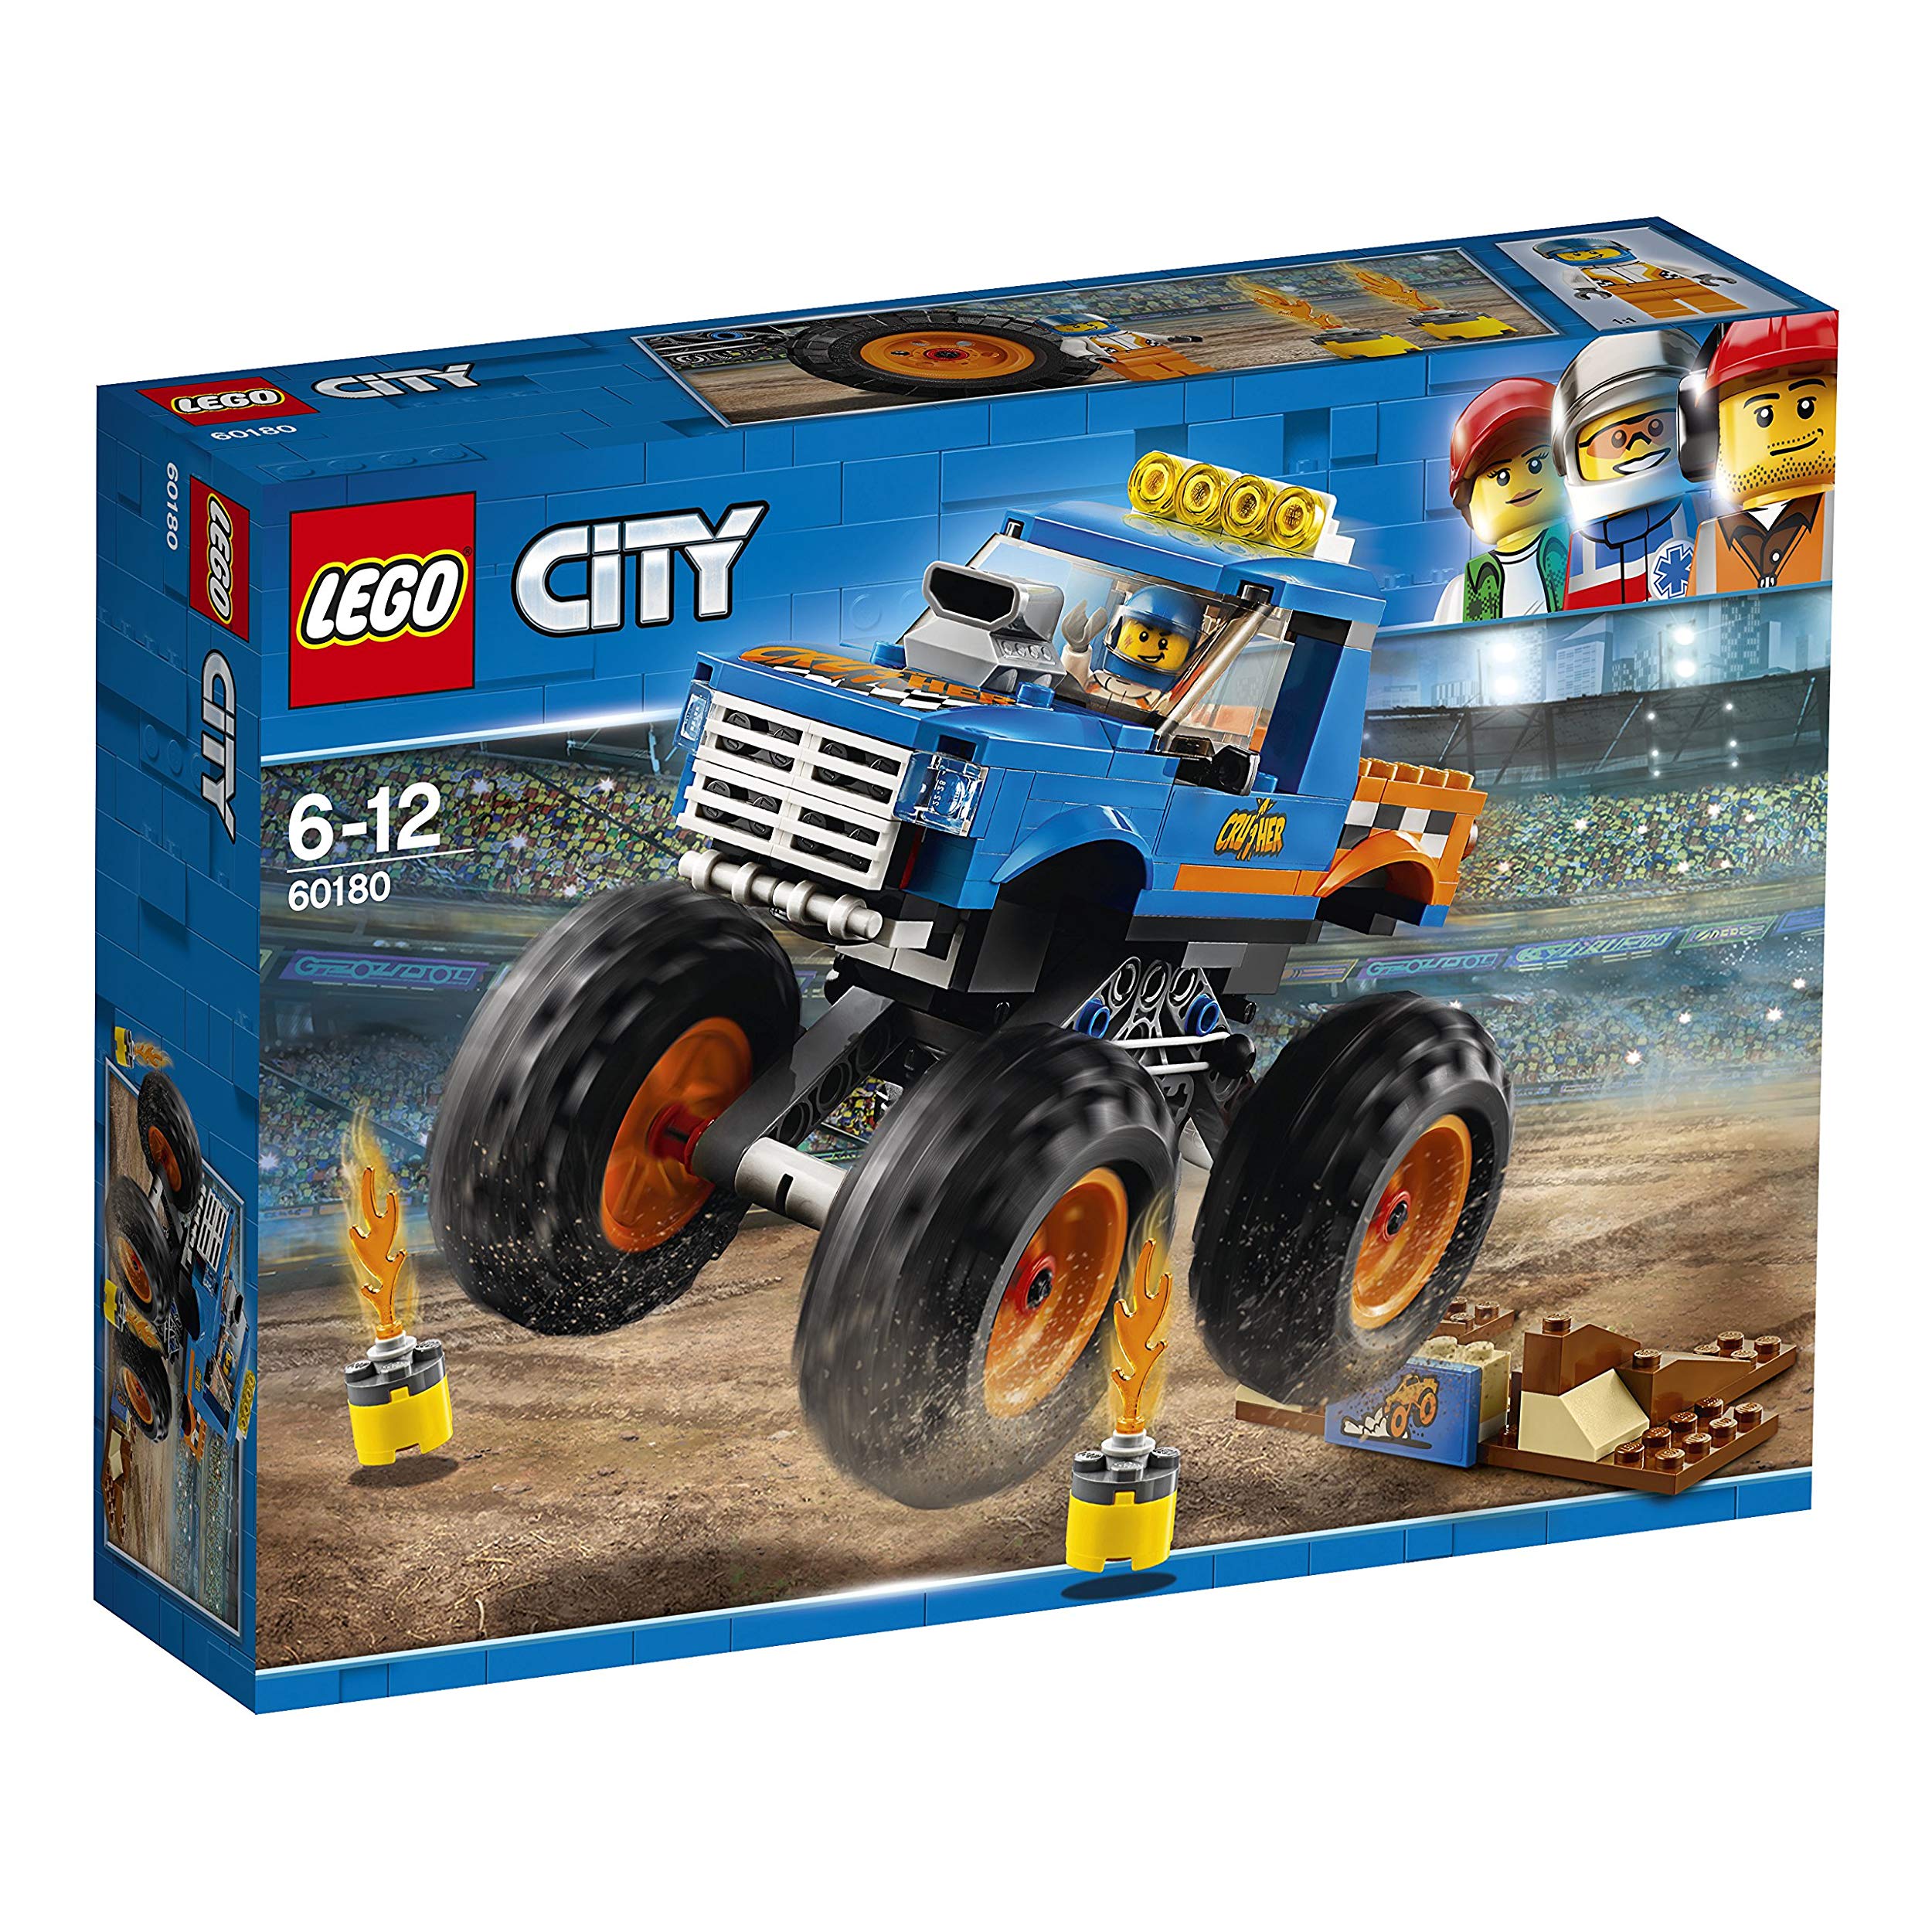 Lego Tough Toy Vehicles